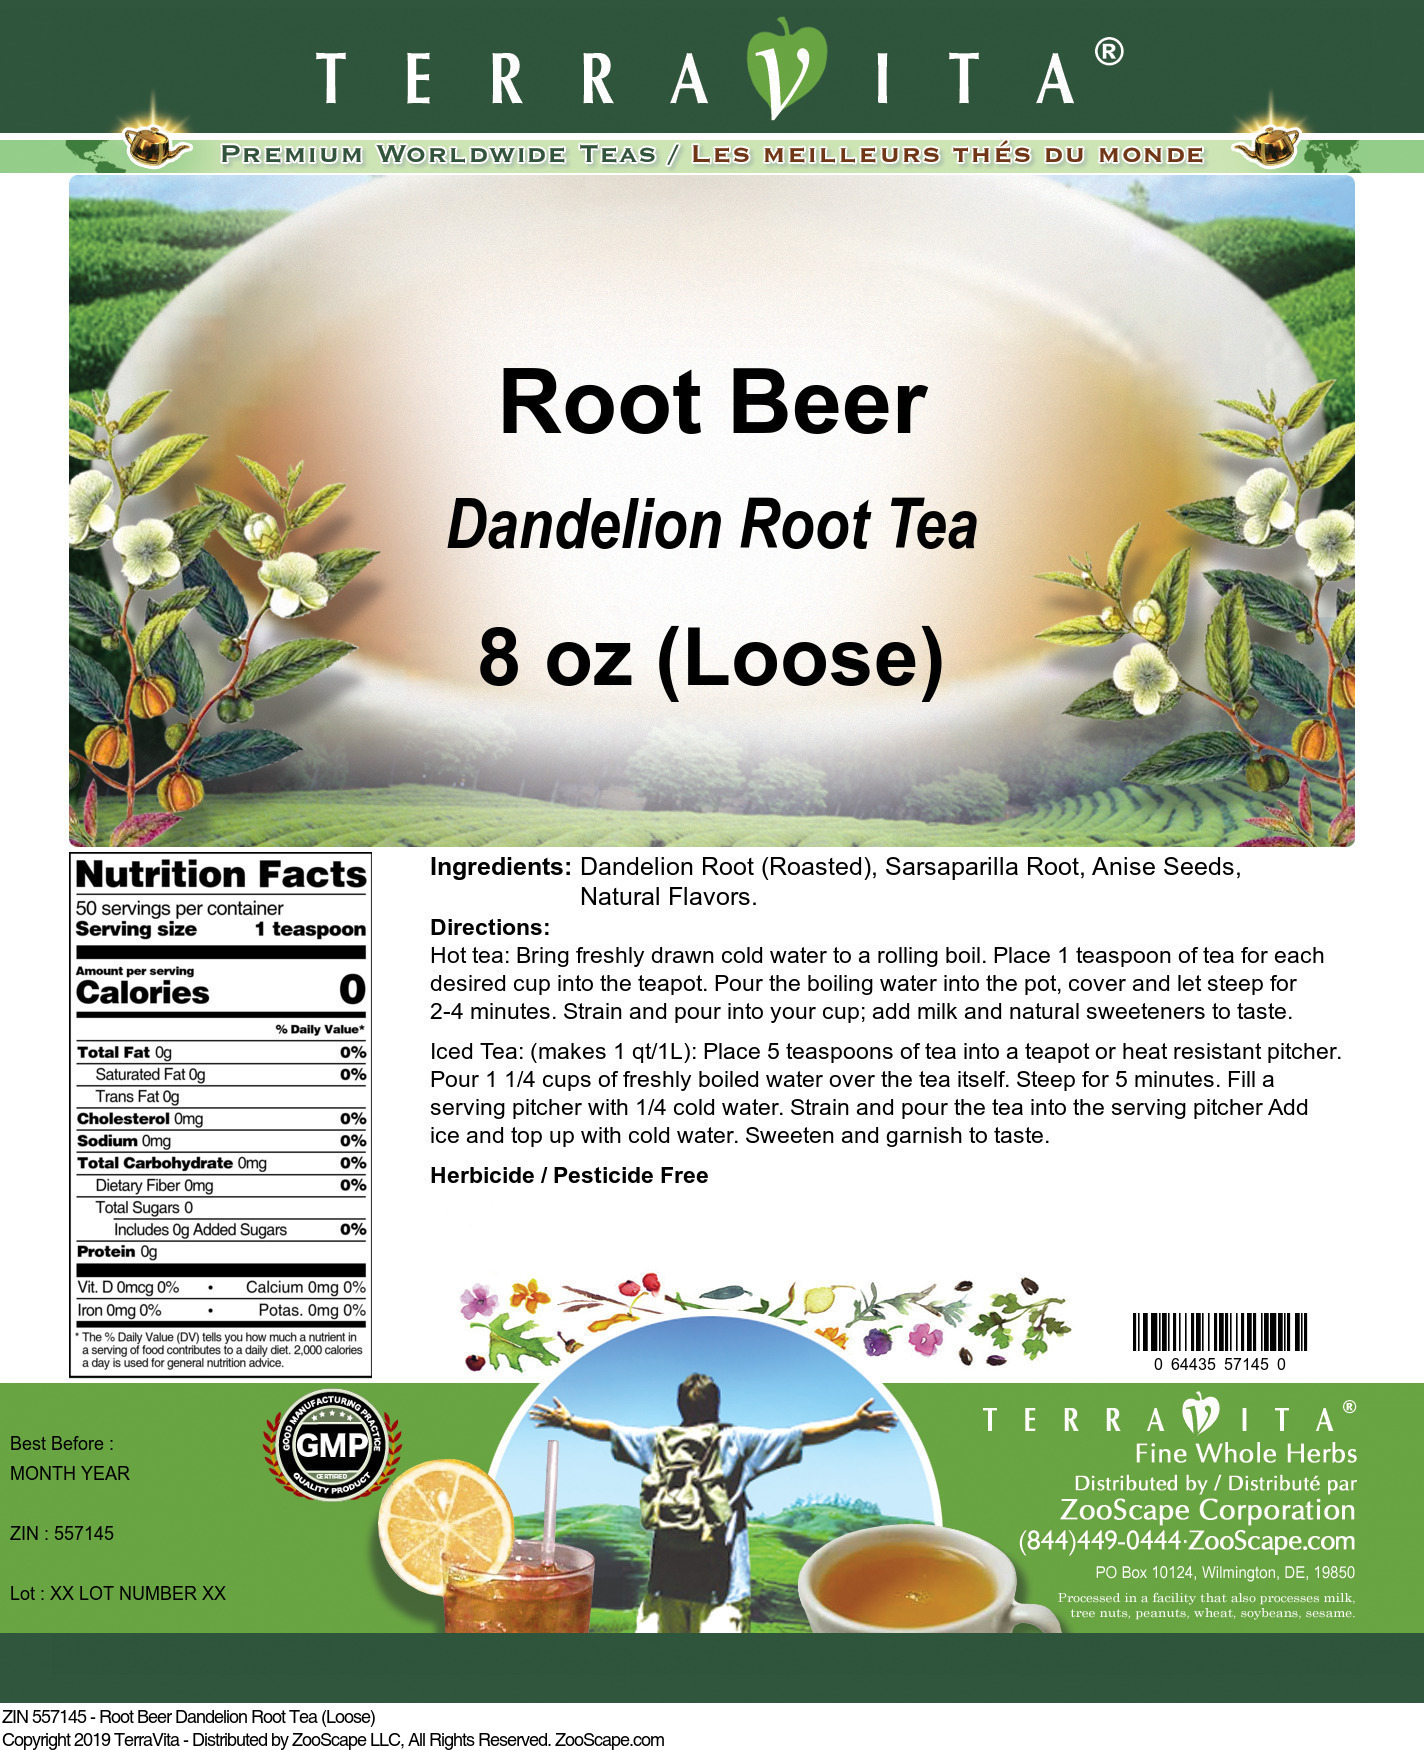 Root Beer Dandelion Root Tea (Loose) - Label